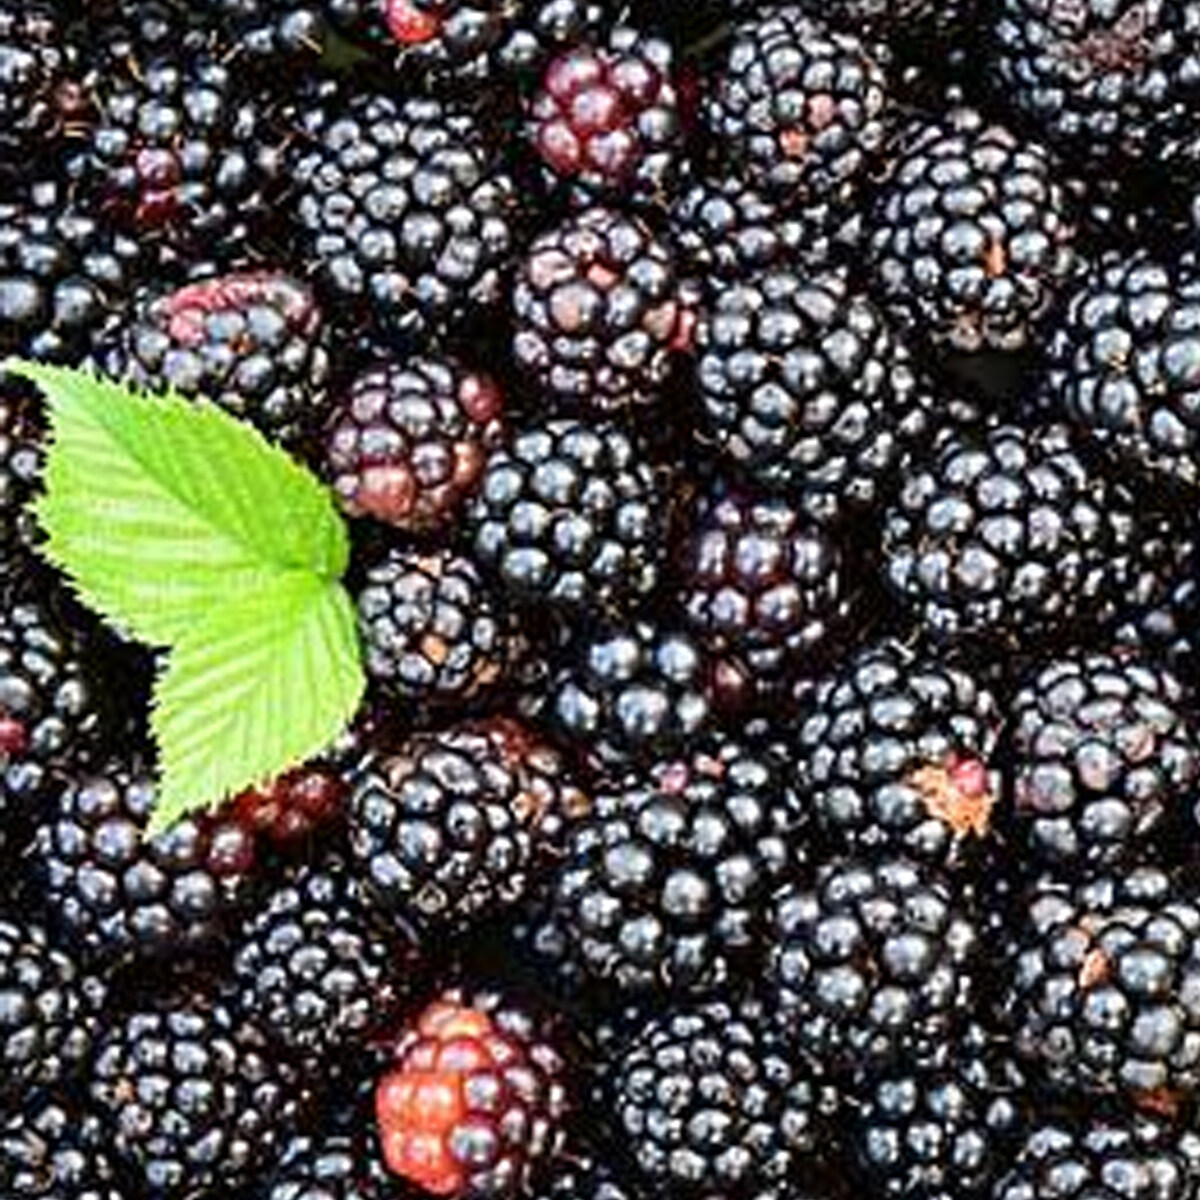 Melhor preço certificado de qualidade venda quente nova estação produtos de frutas em massa iqf Blackberry congelado da China